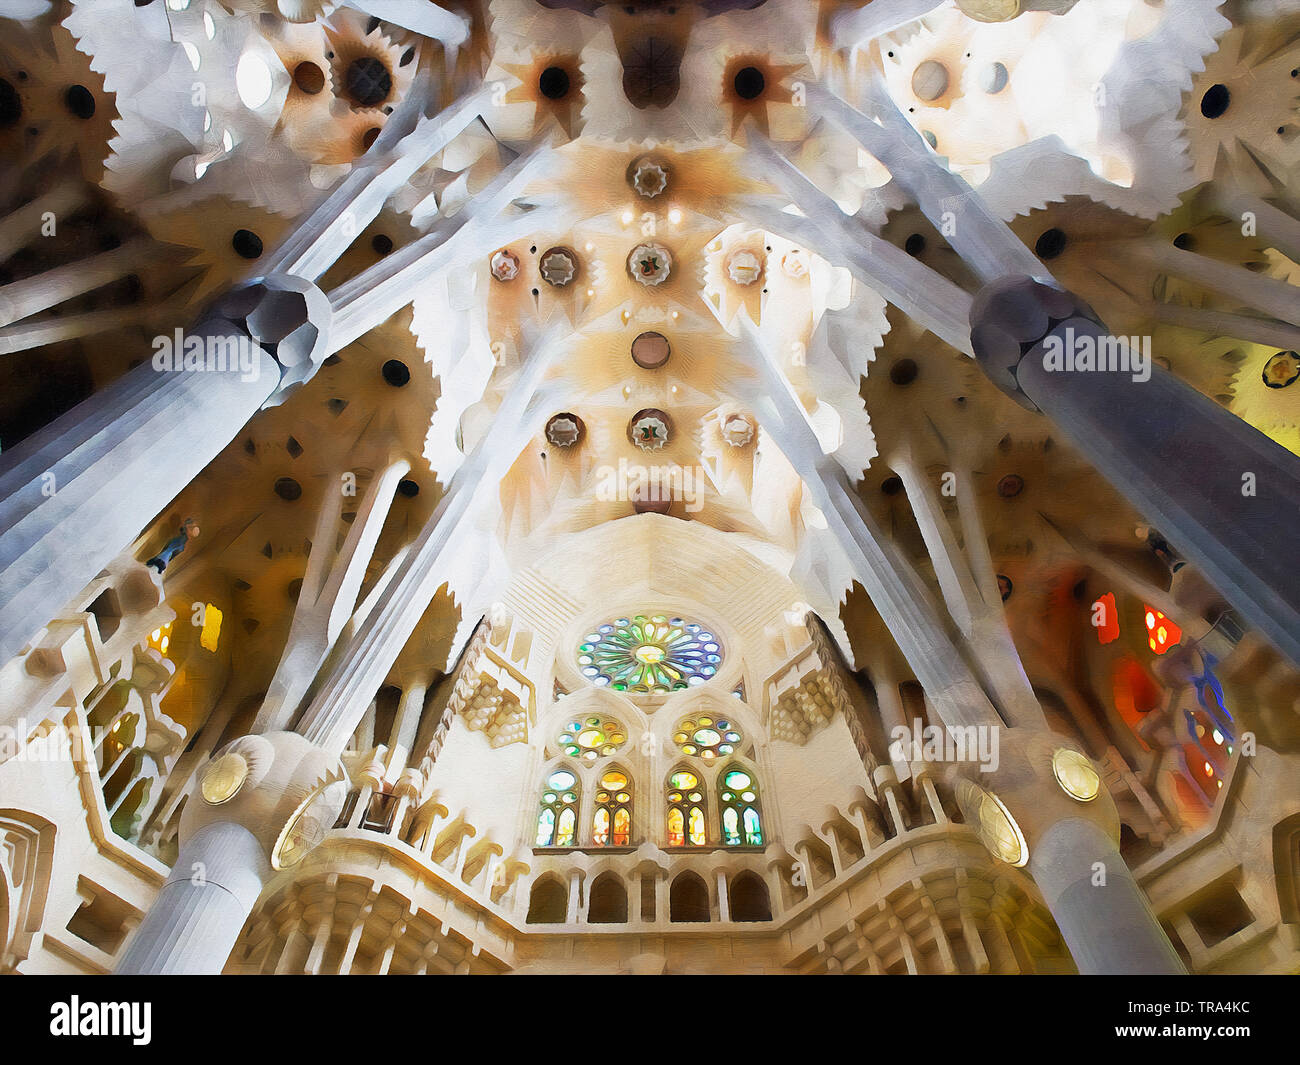 Sagrada Familia, Barcelone. Une grande basilique catholique chef d'oeuvre de l'architecte Antoni Gaudí, le principal représentant du modernisme catalan. Banque D'Images